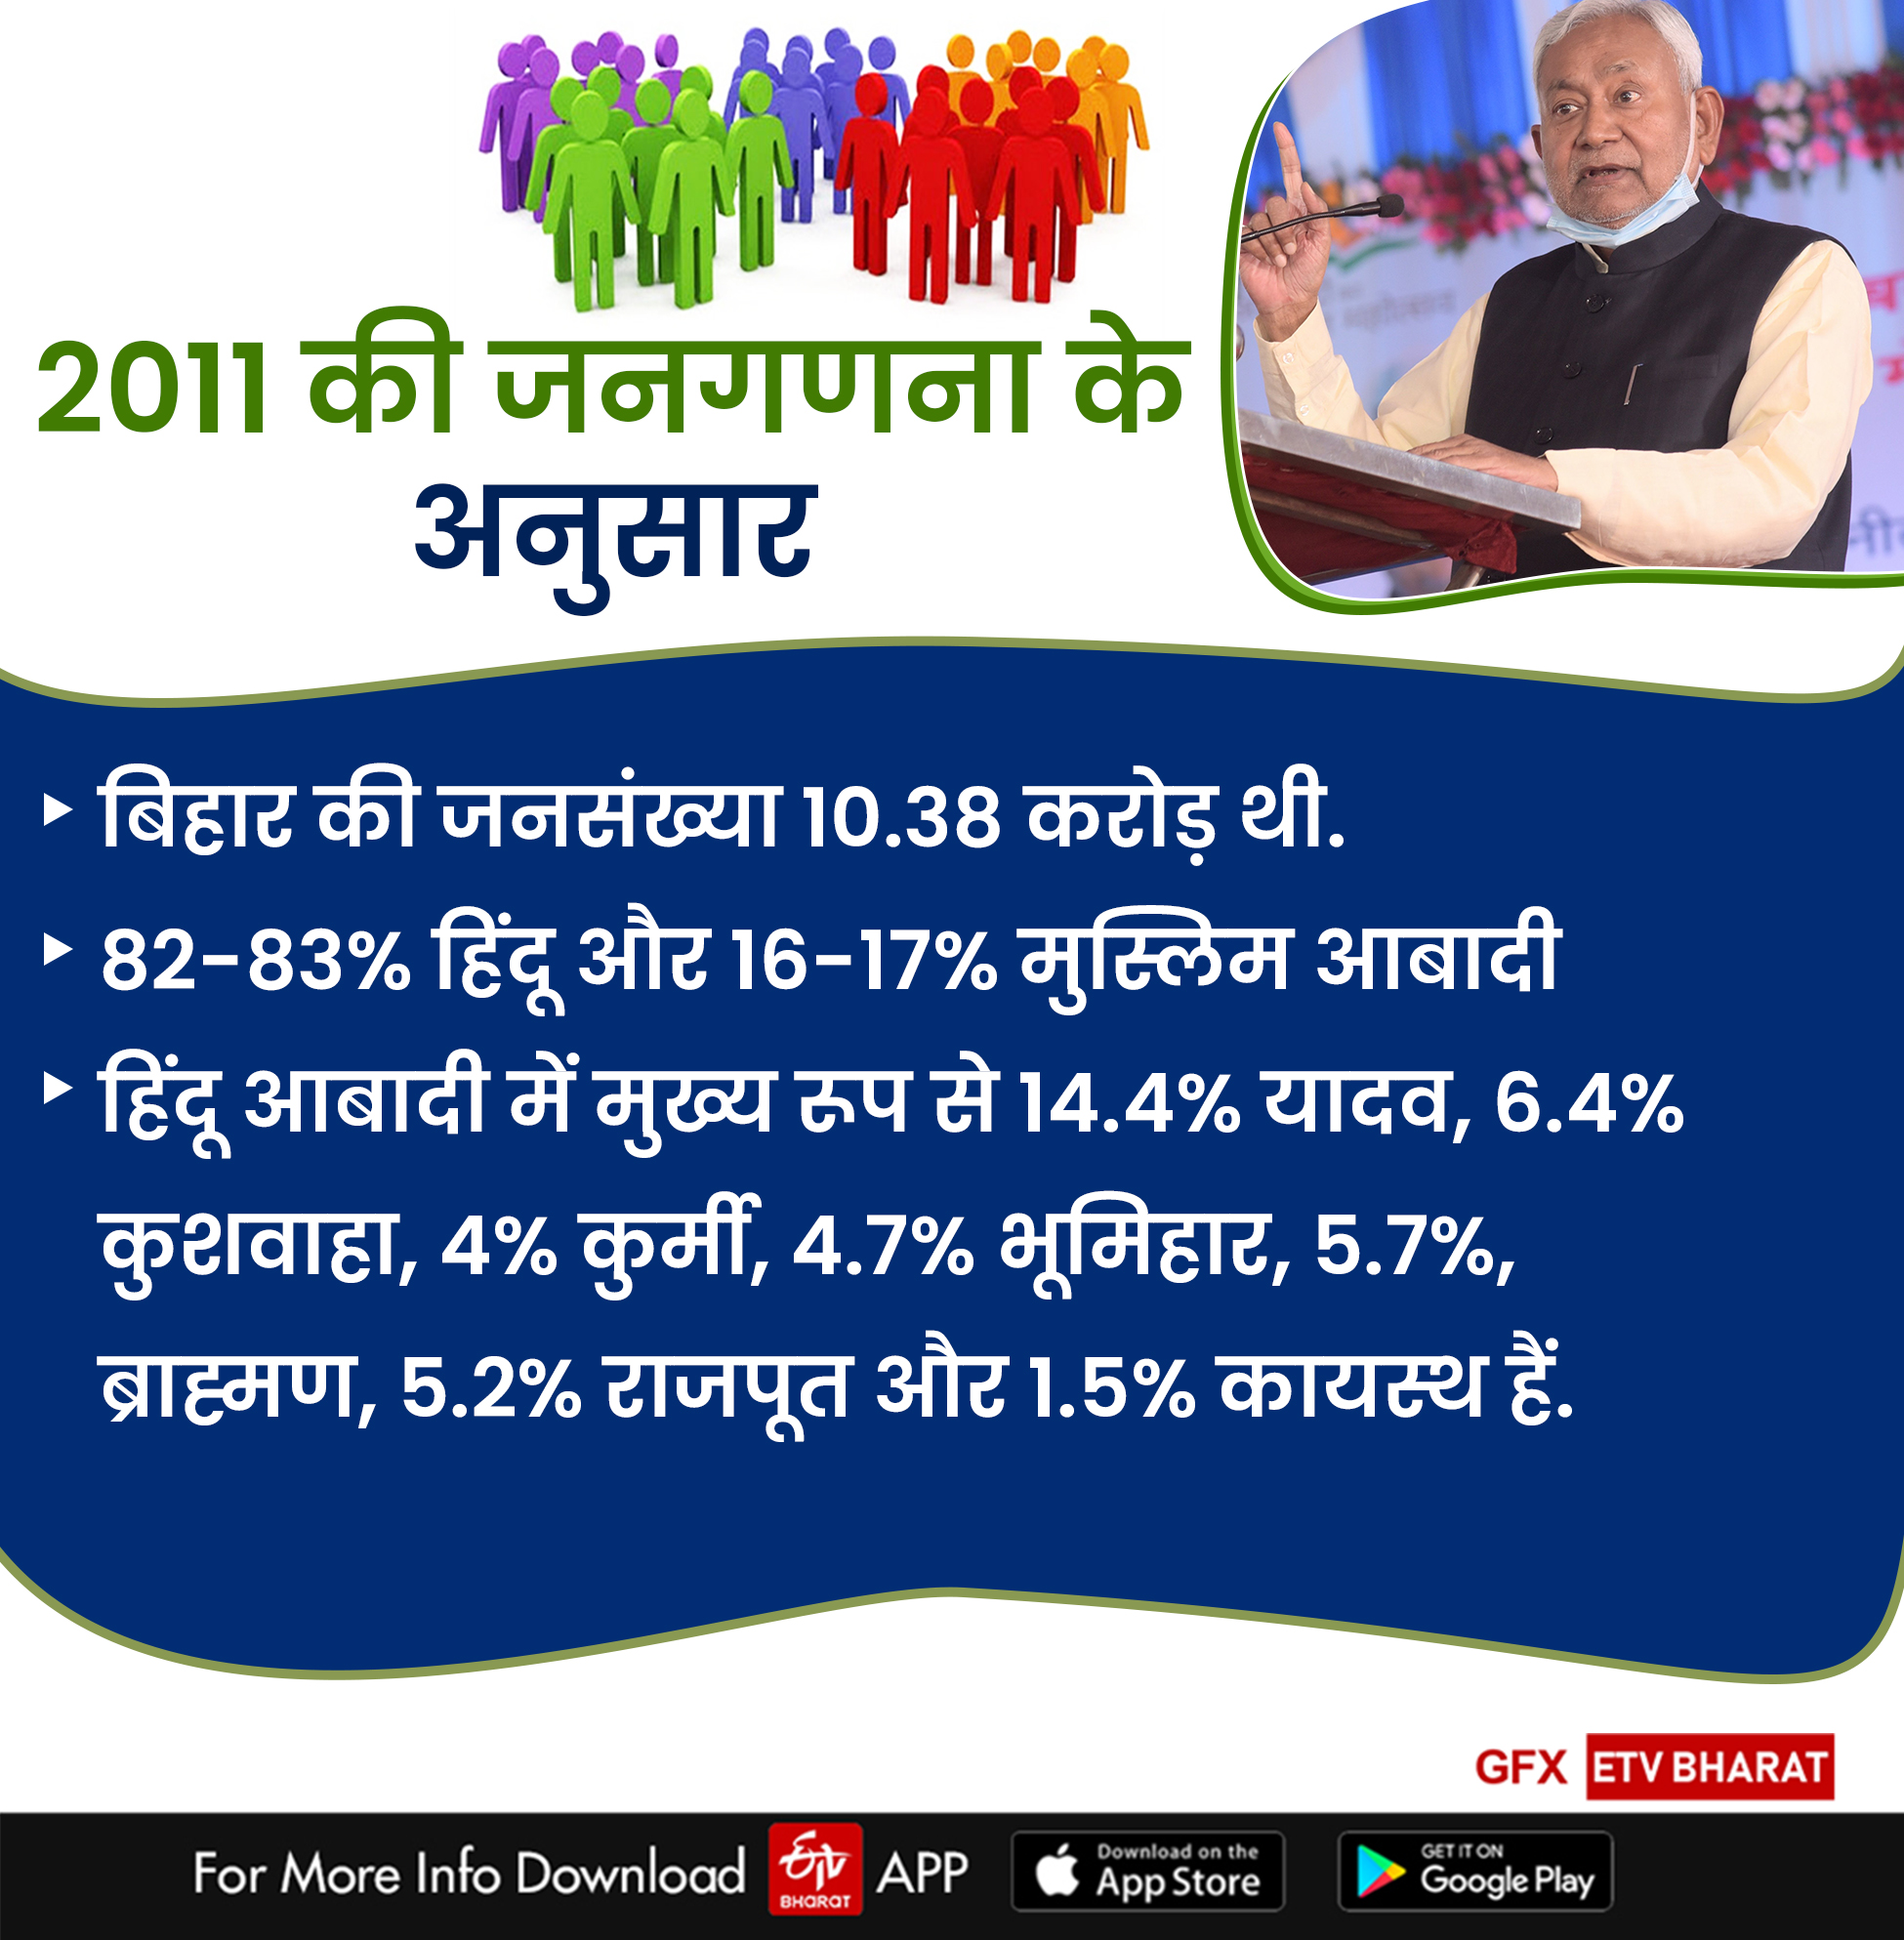 बिहार में जातीय जनगणना के आंकड़ें